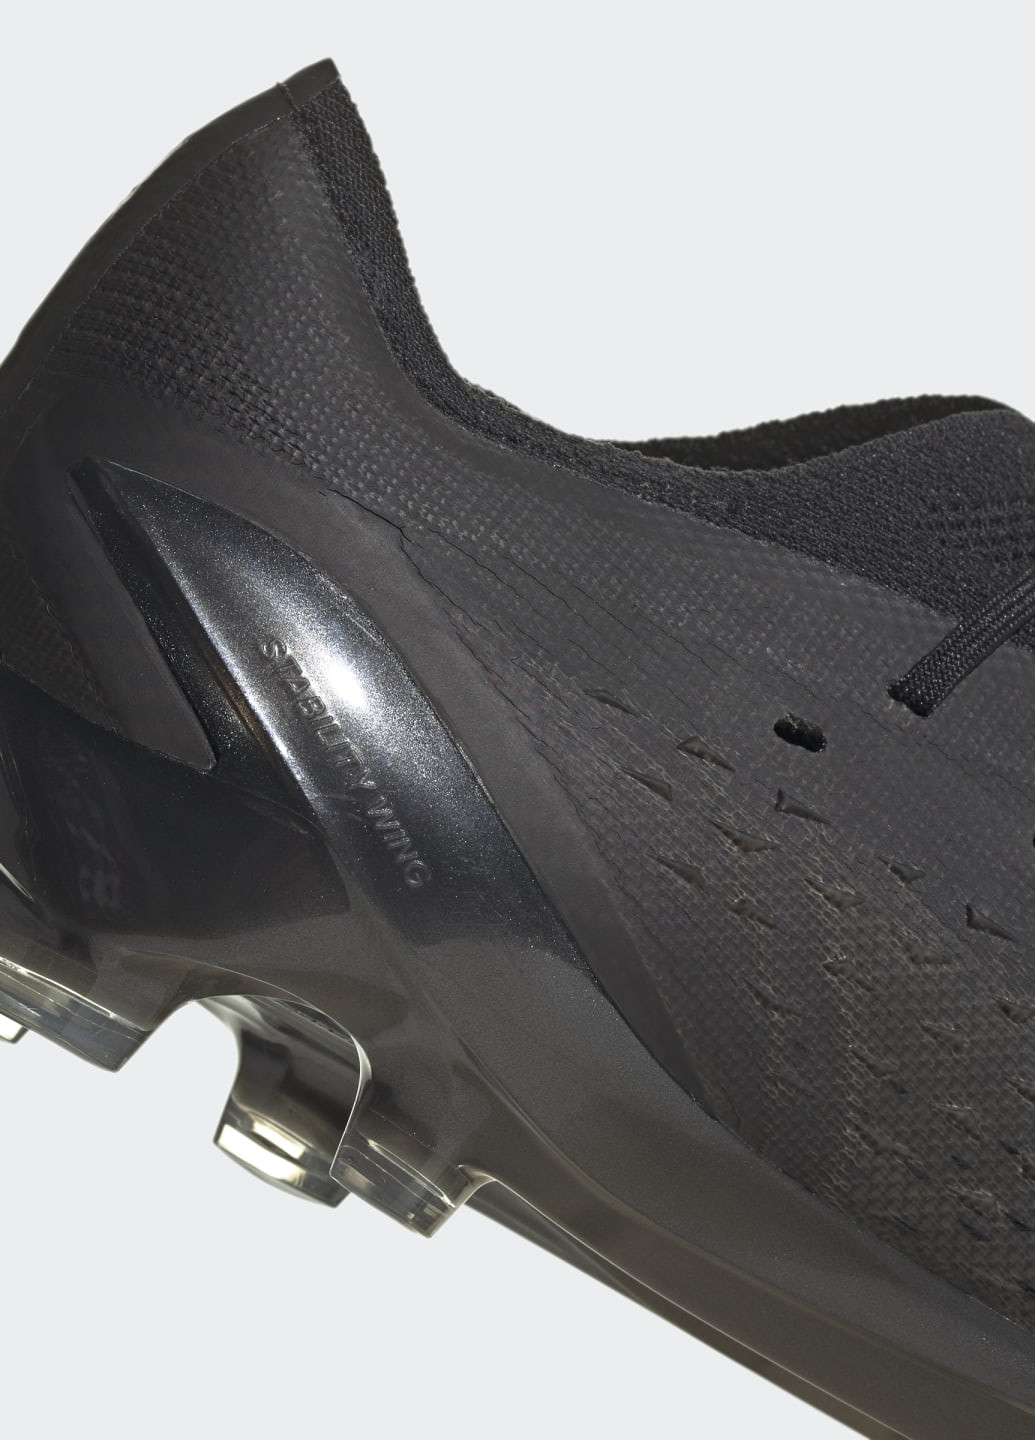 Чорні всесезонні футбольні бутси x speedportal.1 firm ground adidas